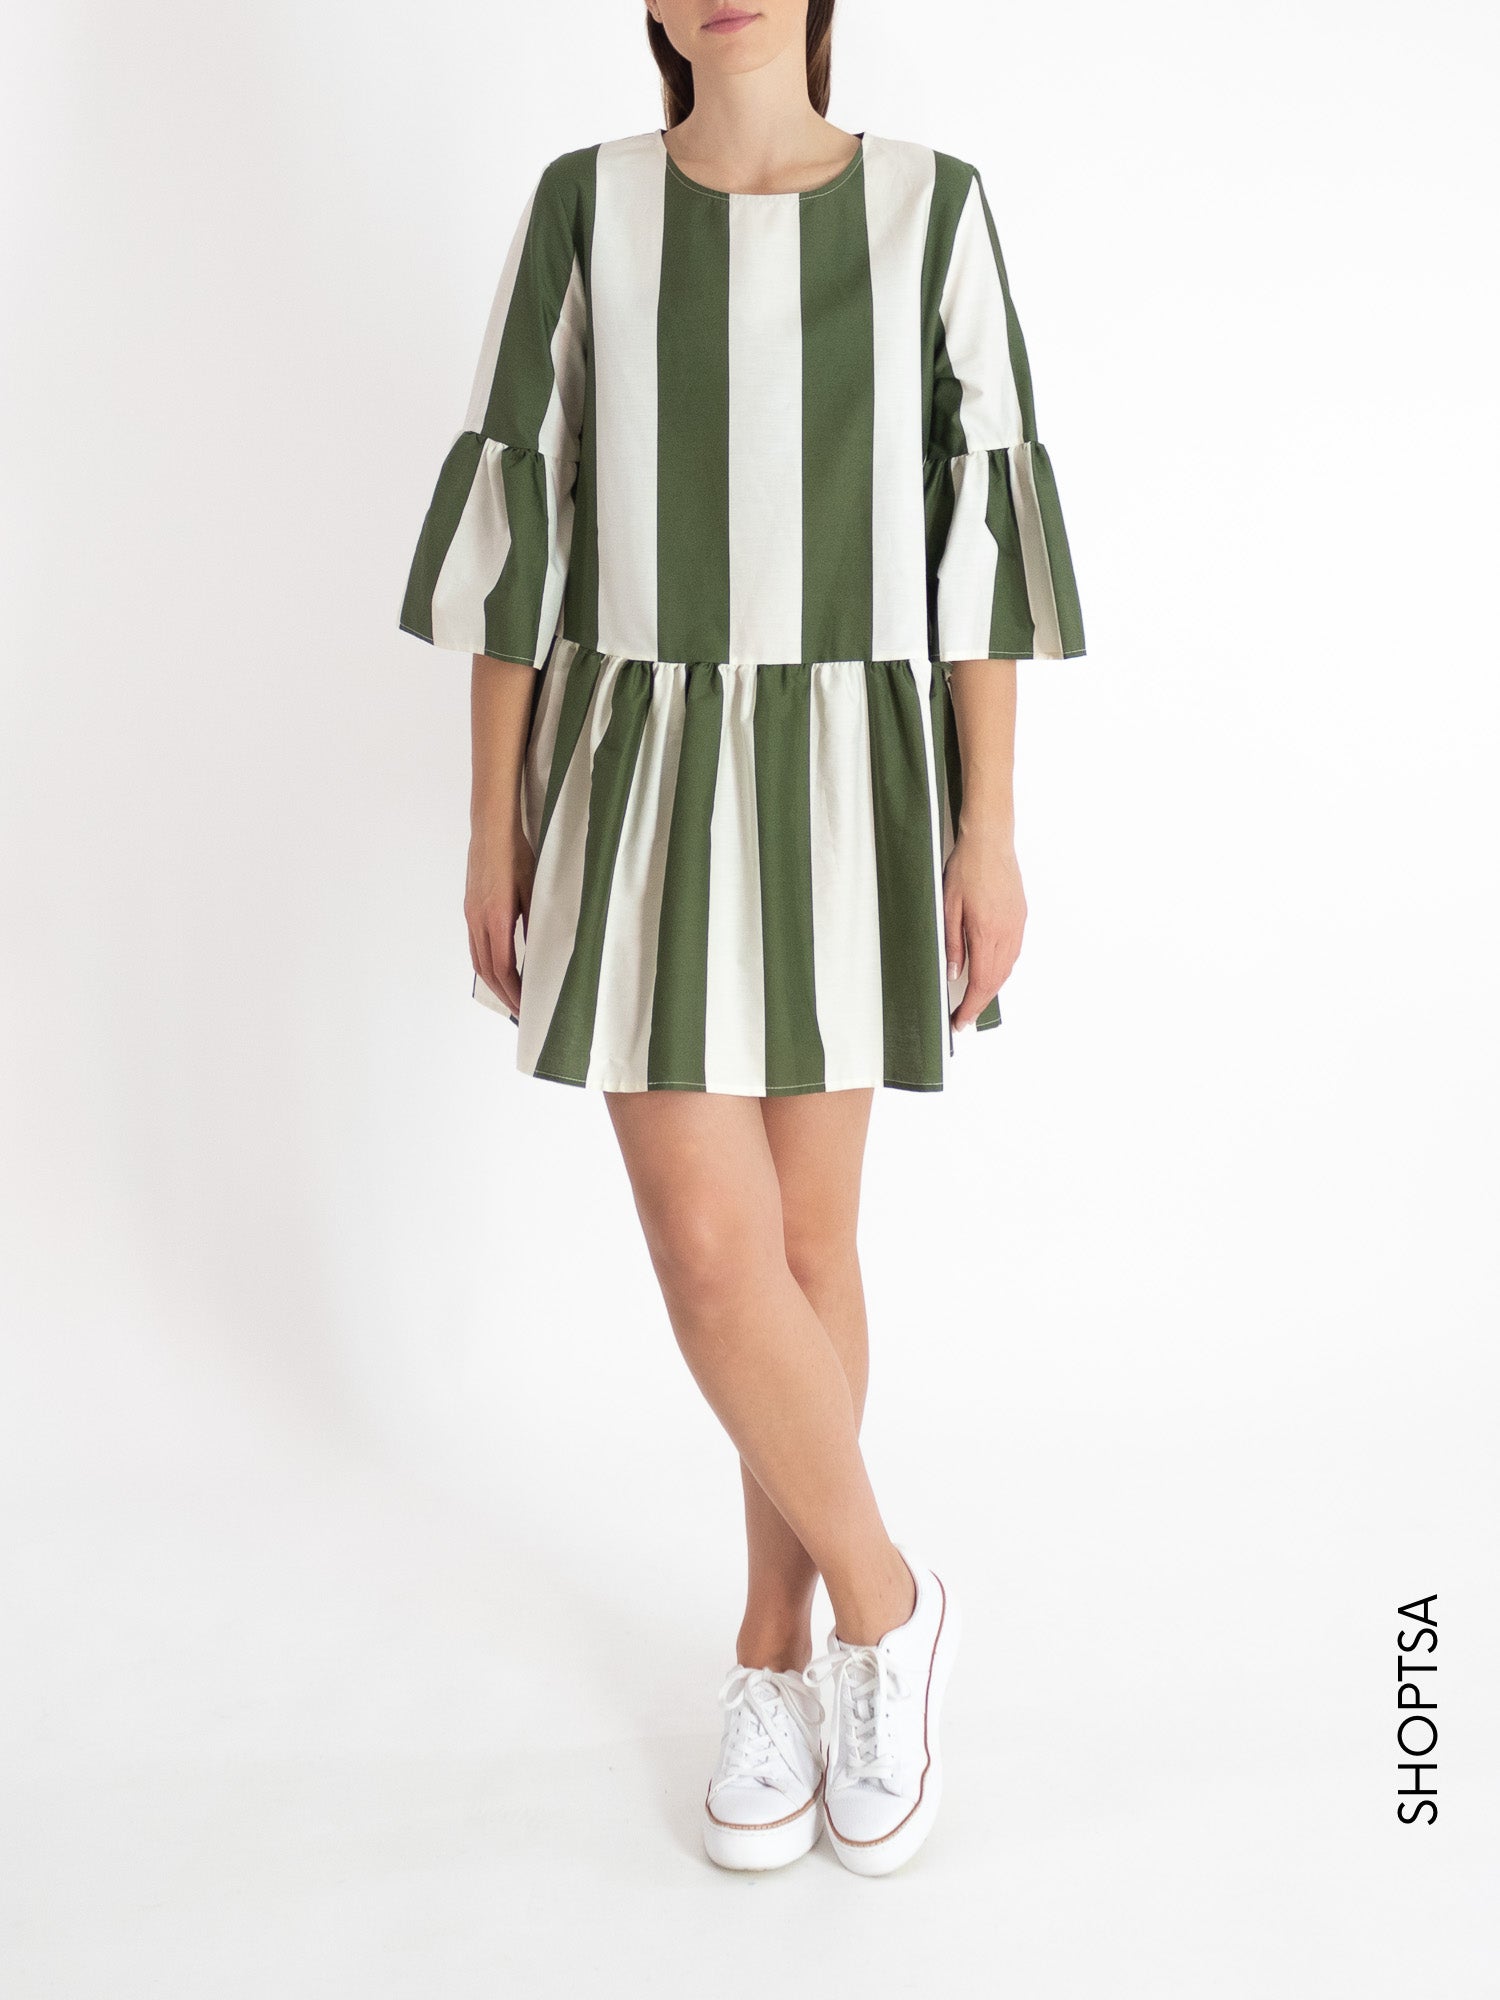 Women's striped dress TY1647 - ViCOLO